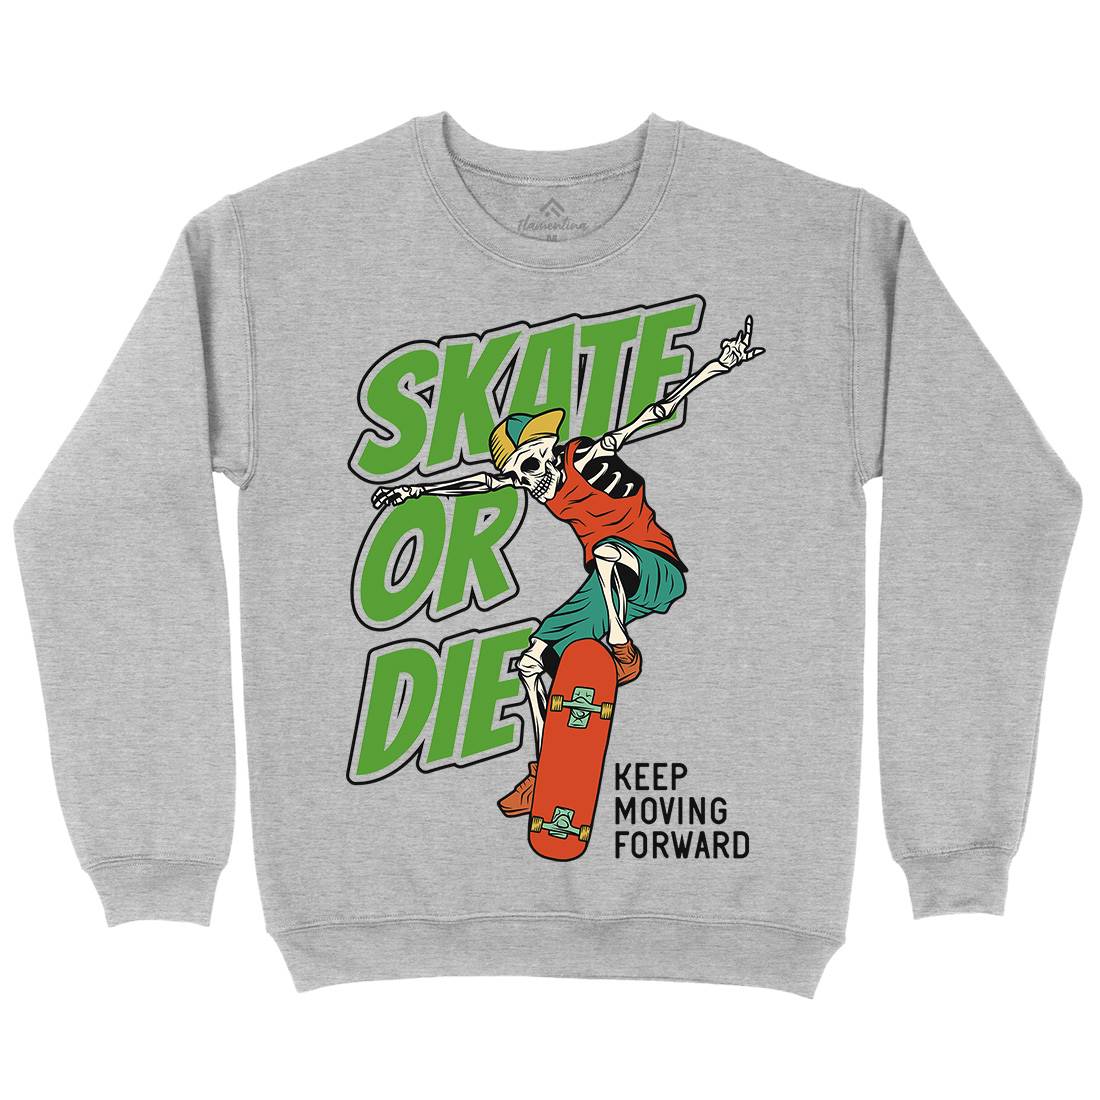 Or Die Mens Crew Neck Sweatshirt Skate D971